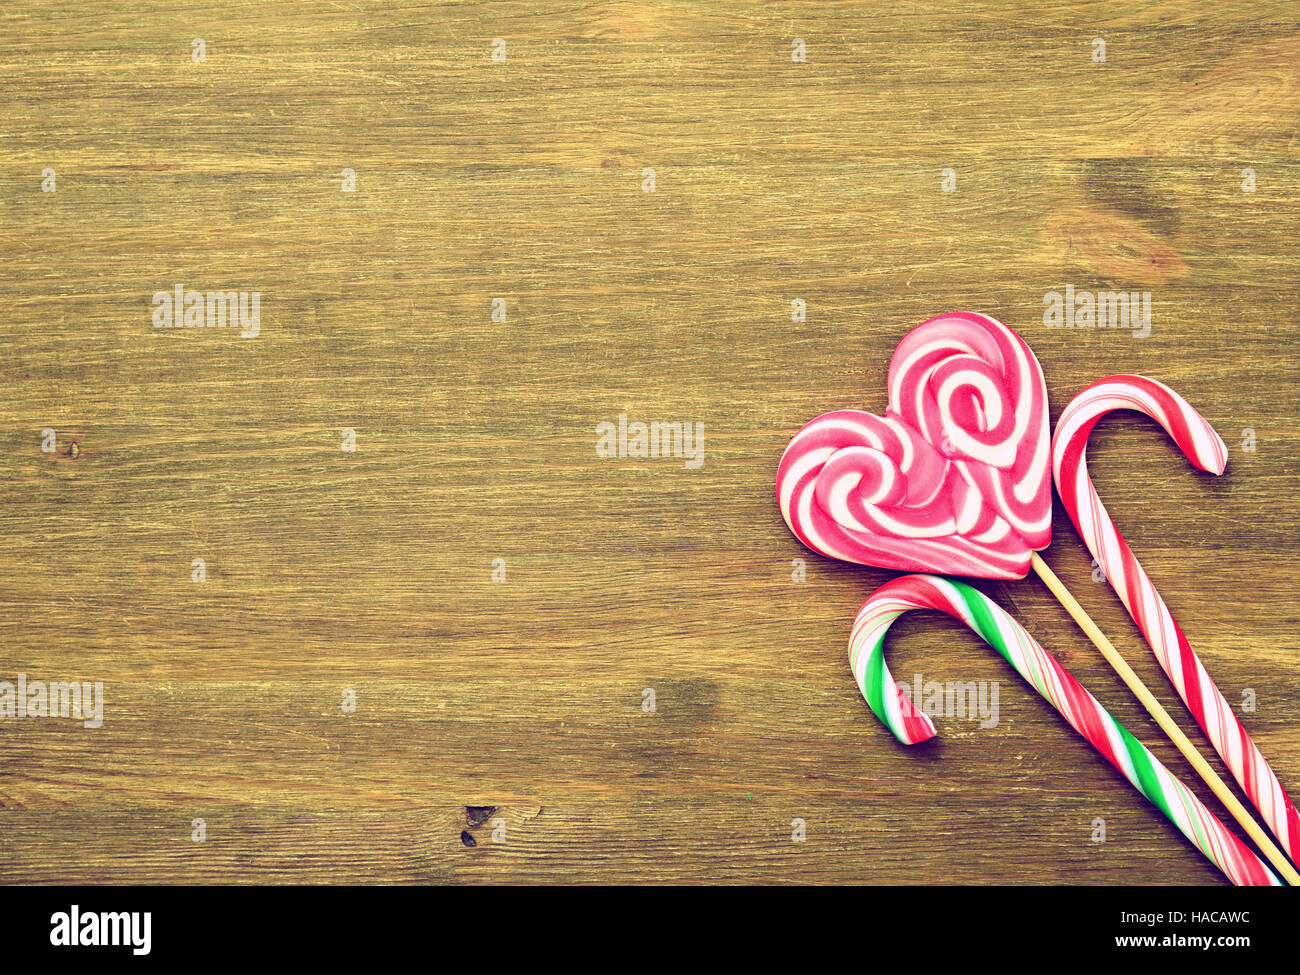 Lutscher in Form eines Herzens und Süßigkeiten auf einem hölzernen Hintergrund im Vintage-Stil. Platz für Text. Ansicht von oben Stockfoto